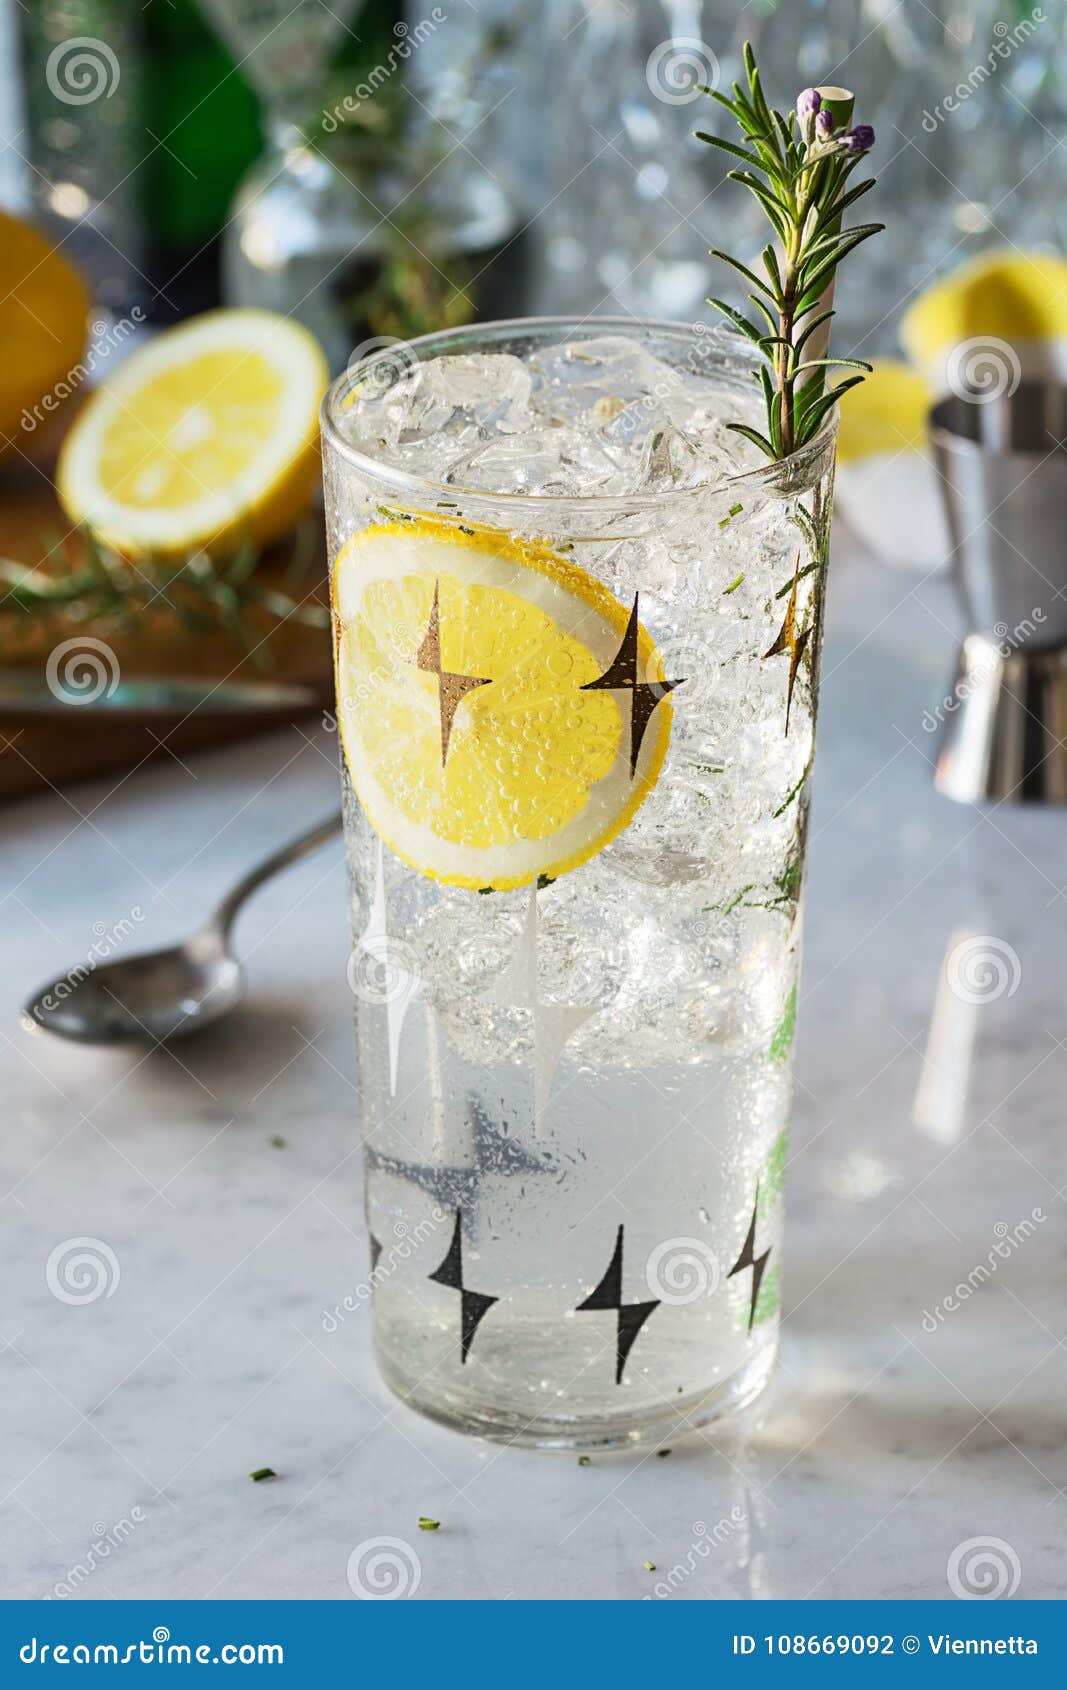 rosemary lemon gin fizz or vodka smash cocktail